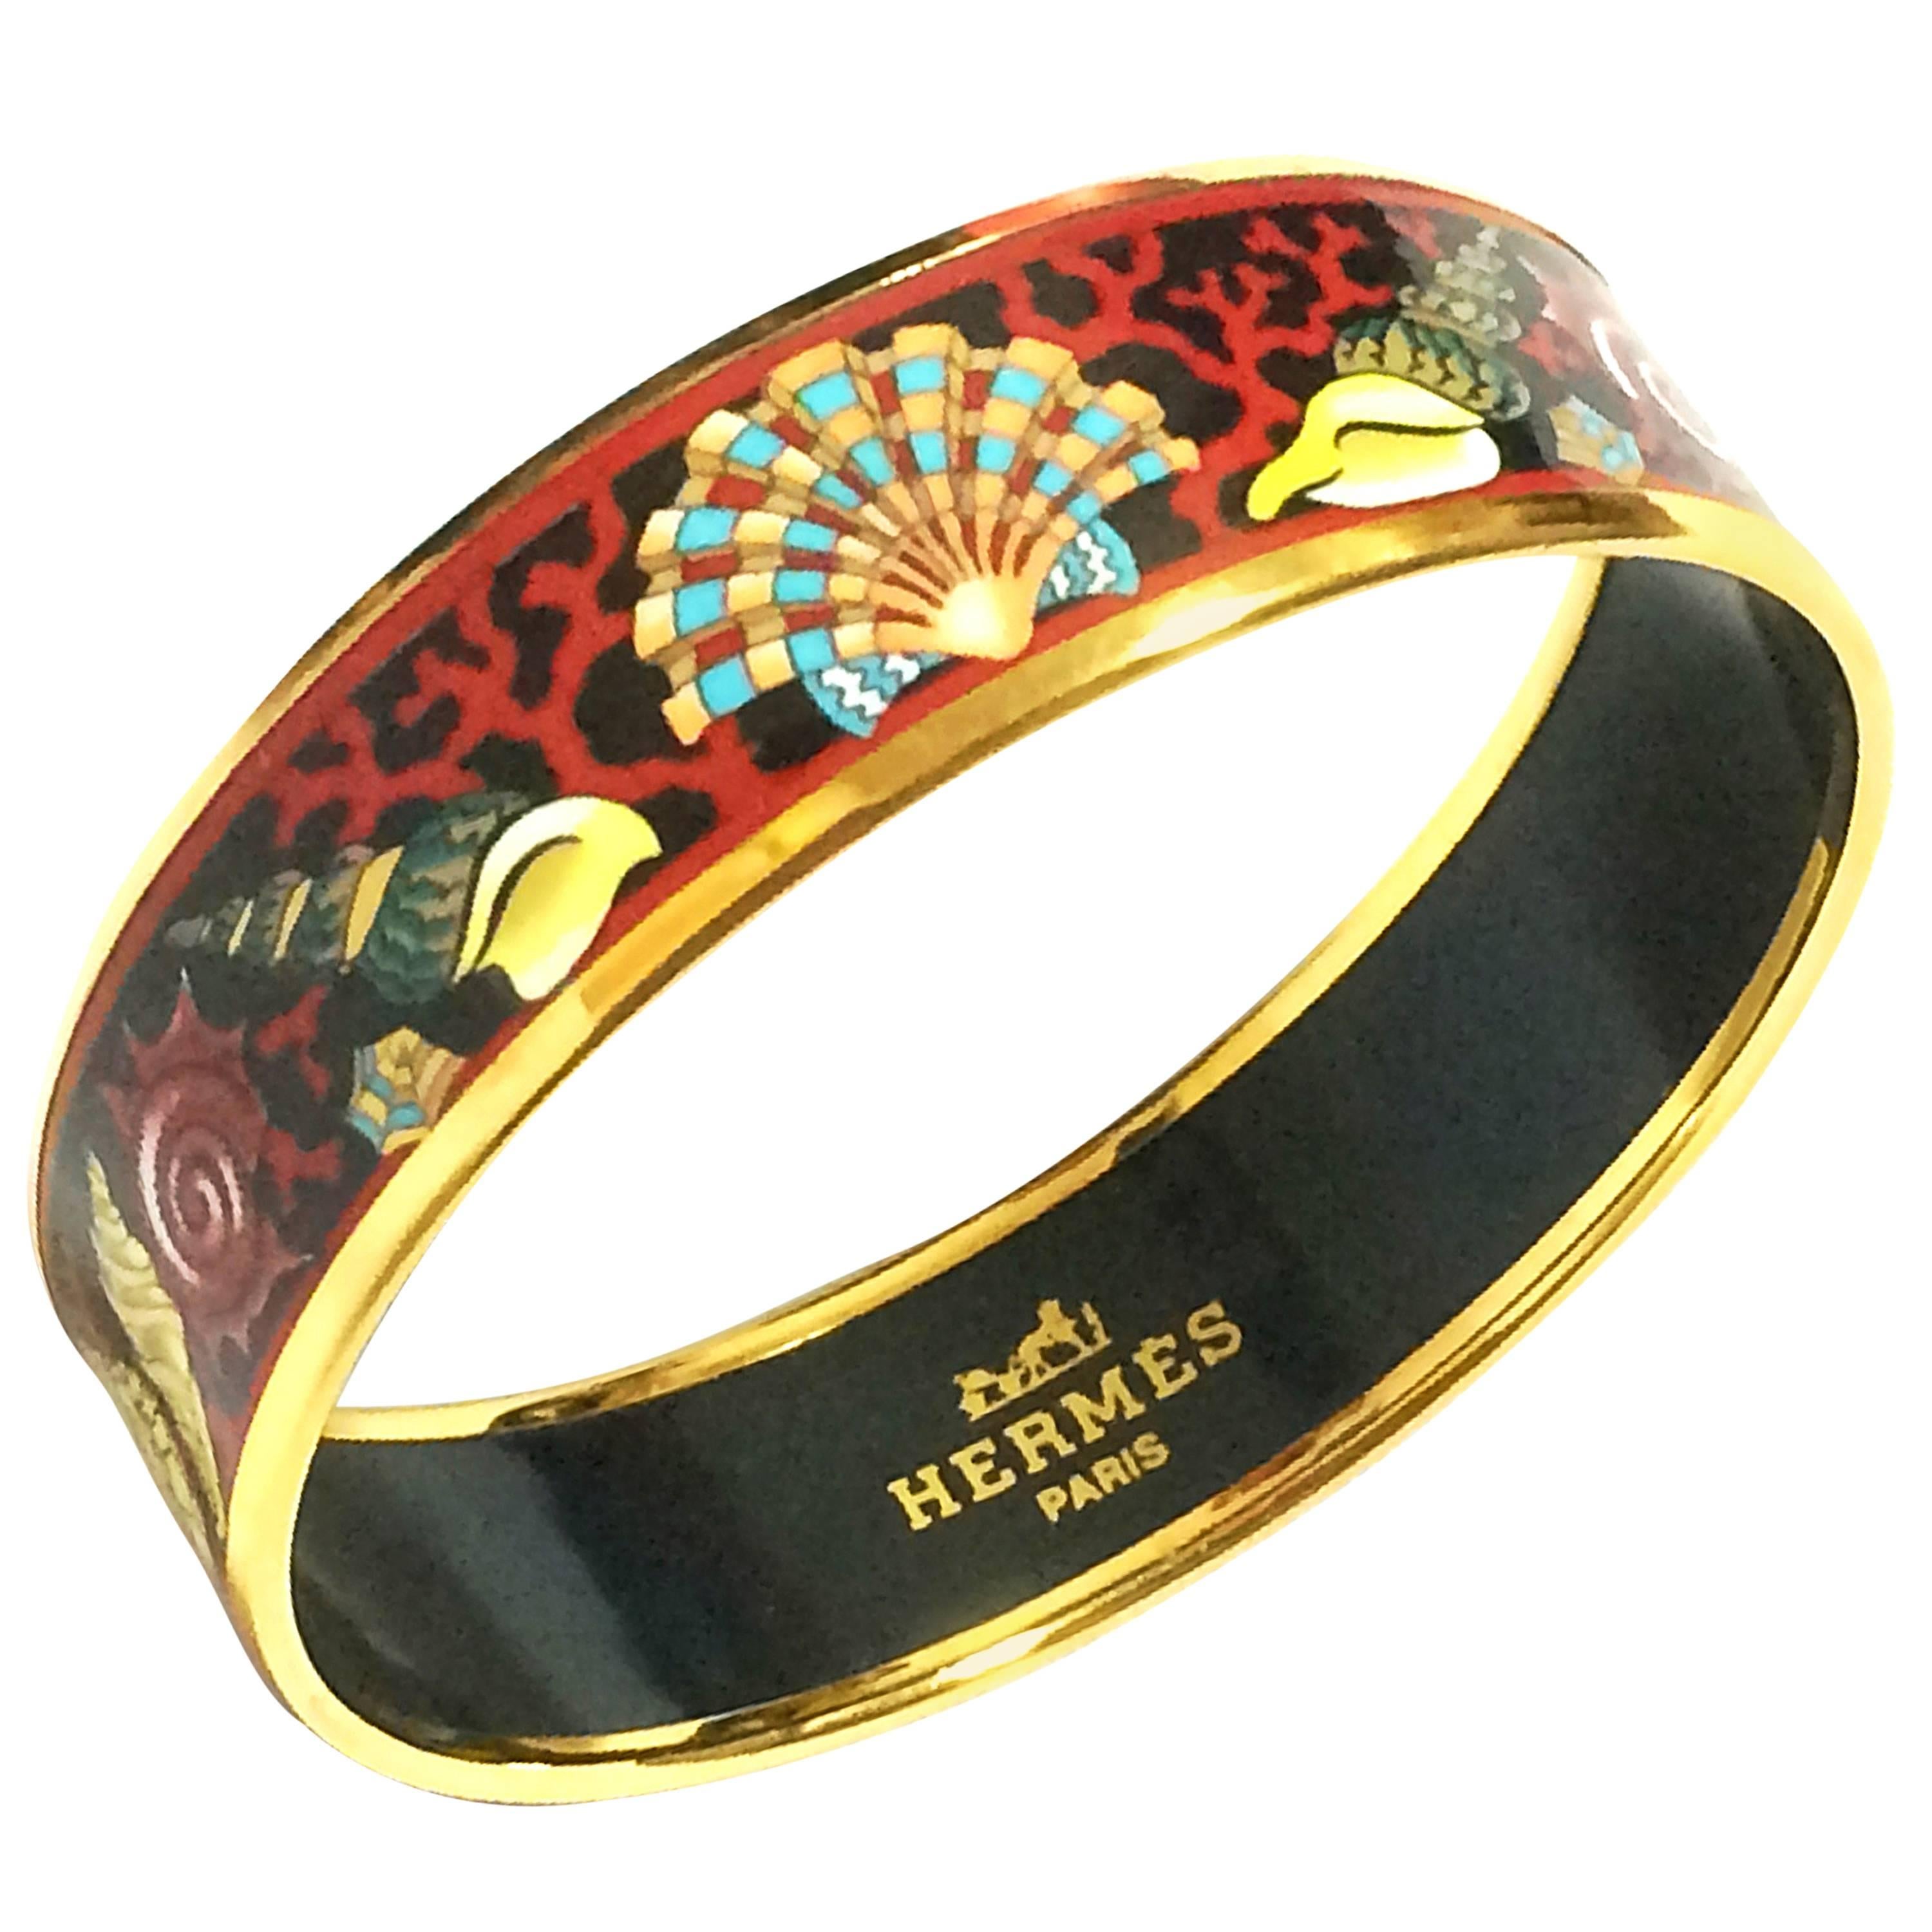 Vintage Hermes cloisonne enamel golden thick bangle, bracelet  with ocean, black